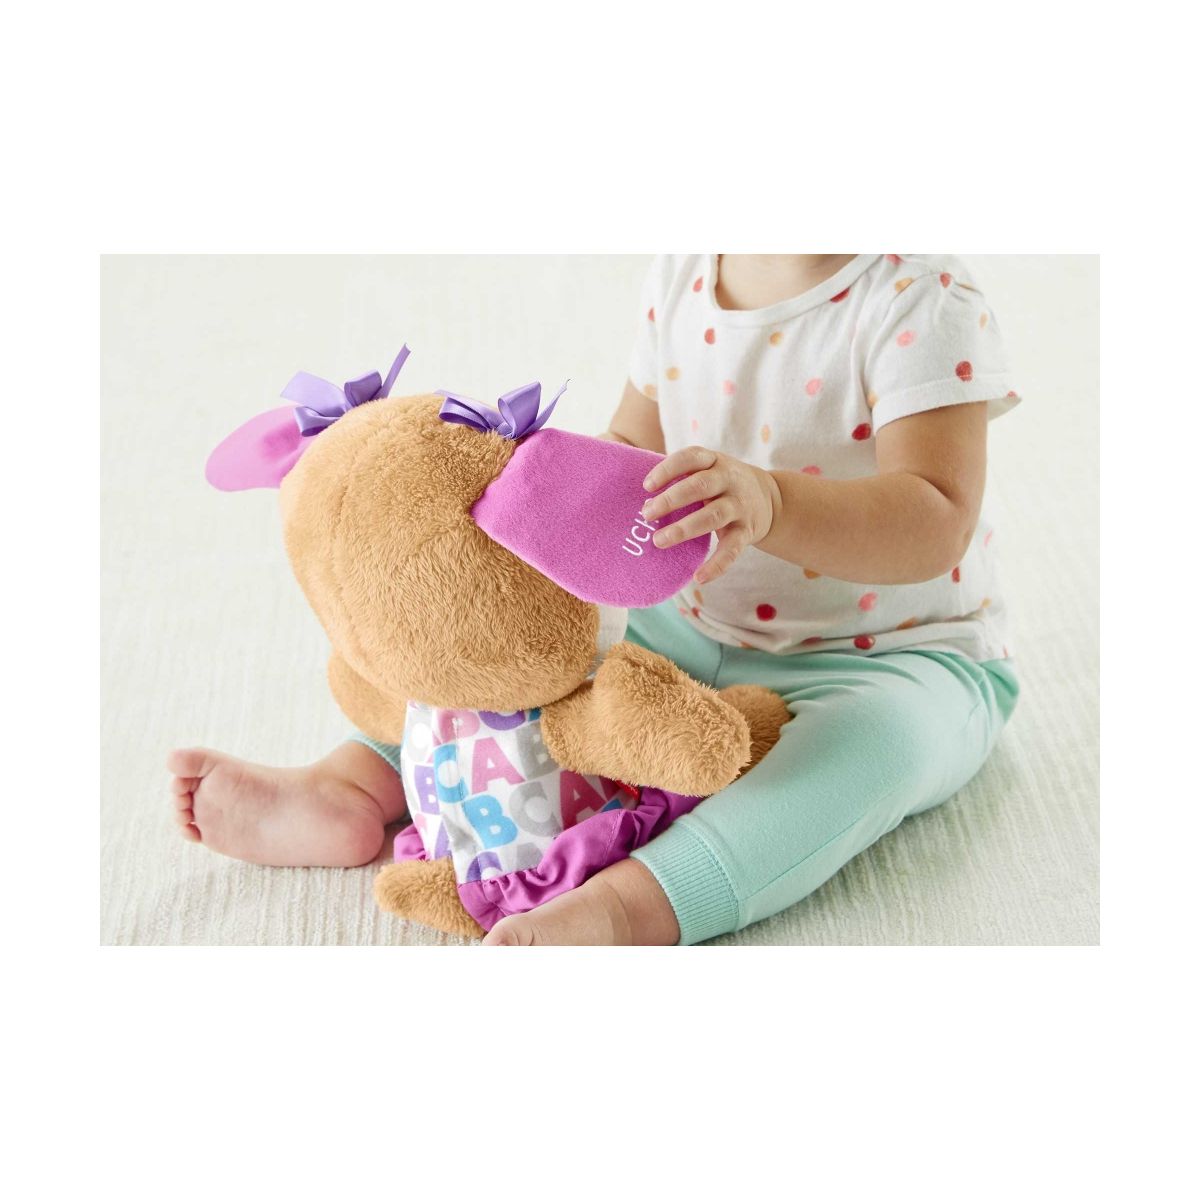 Pluszak Infant Fp siostrzyczka szczeniaczka Mattel (407843)